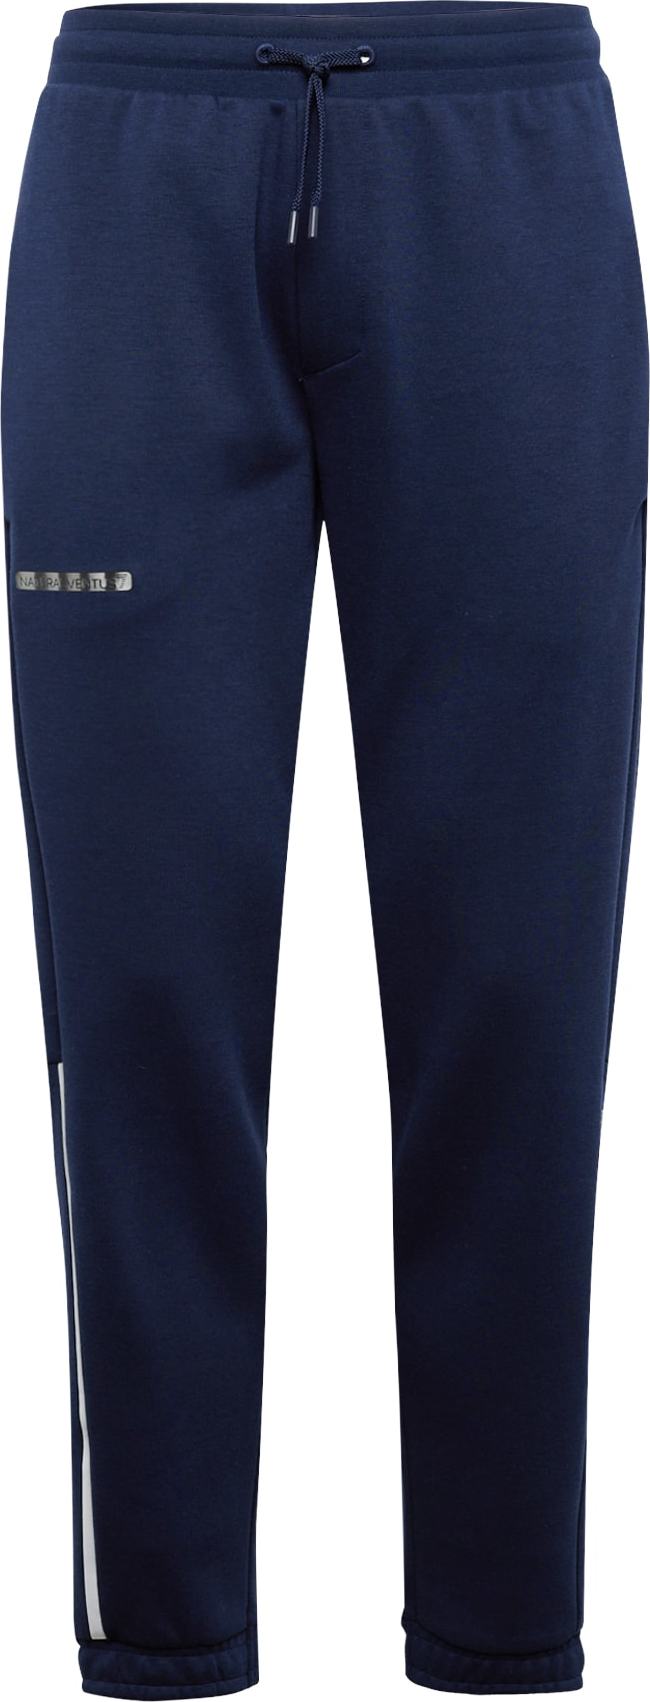 Sportovní kalhoty EA7 Emporio Armani námořnická modř